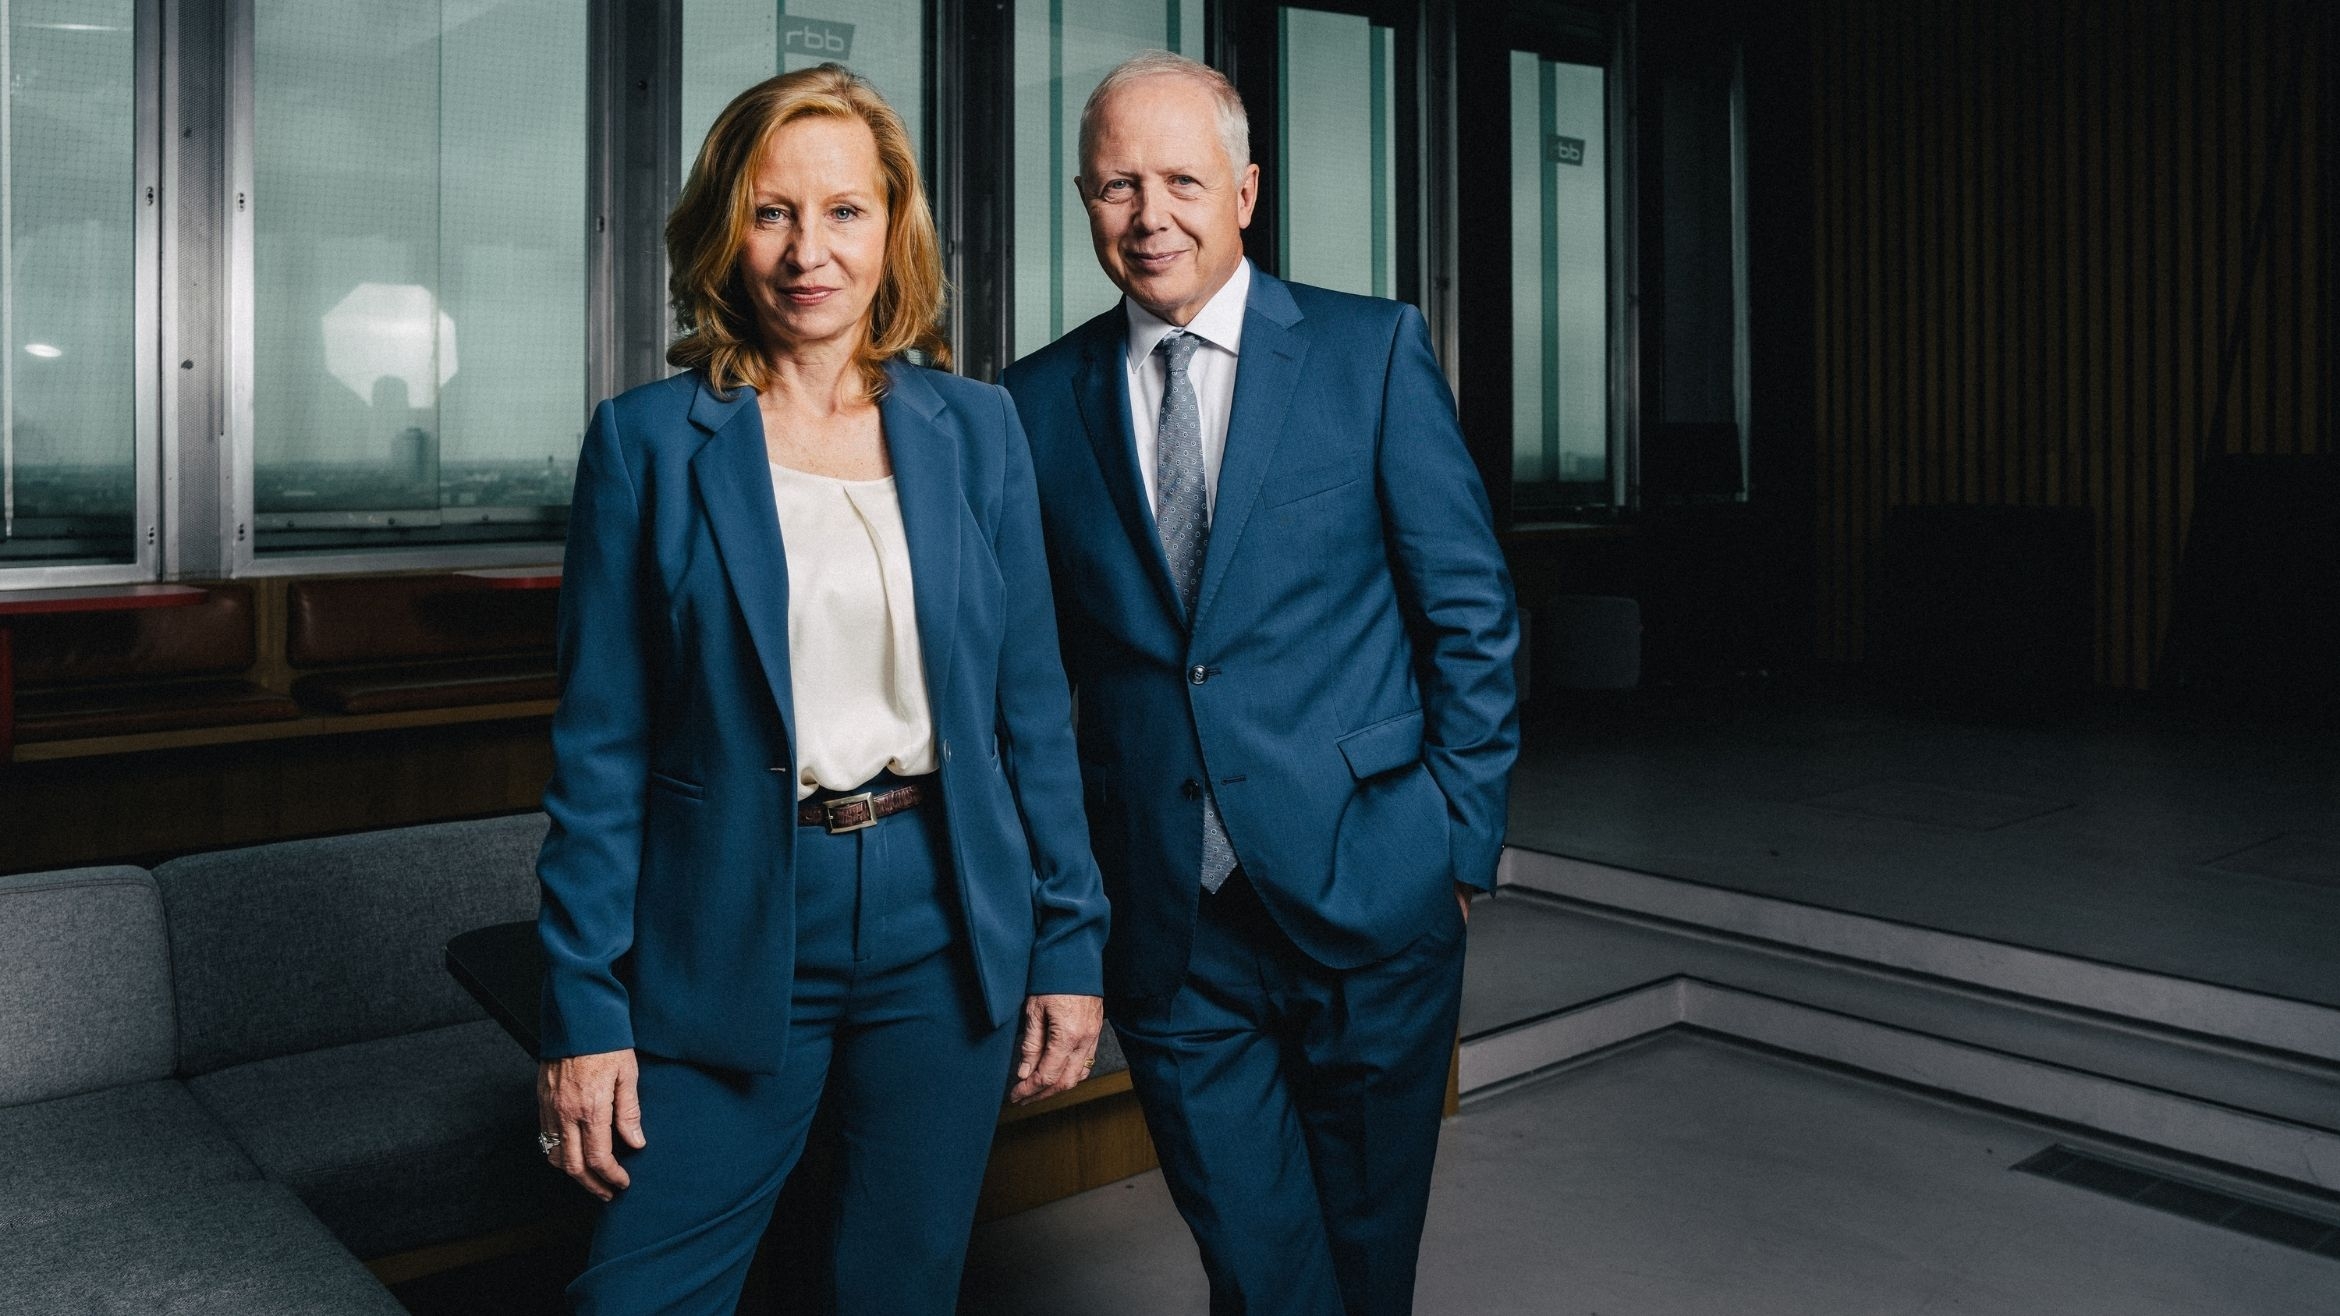 RBB-Intendantin Patricia Schlesinger übernimmt den ARD-Vorsitz von WDR-Intendant Tom Buhrow –